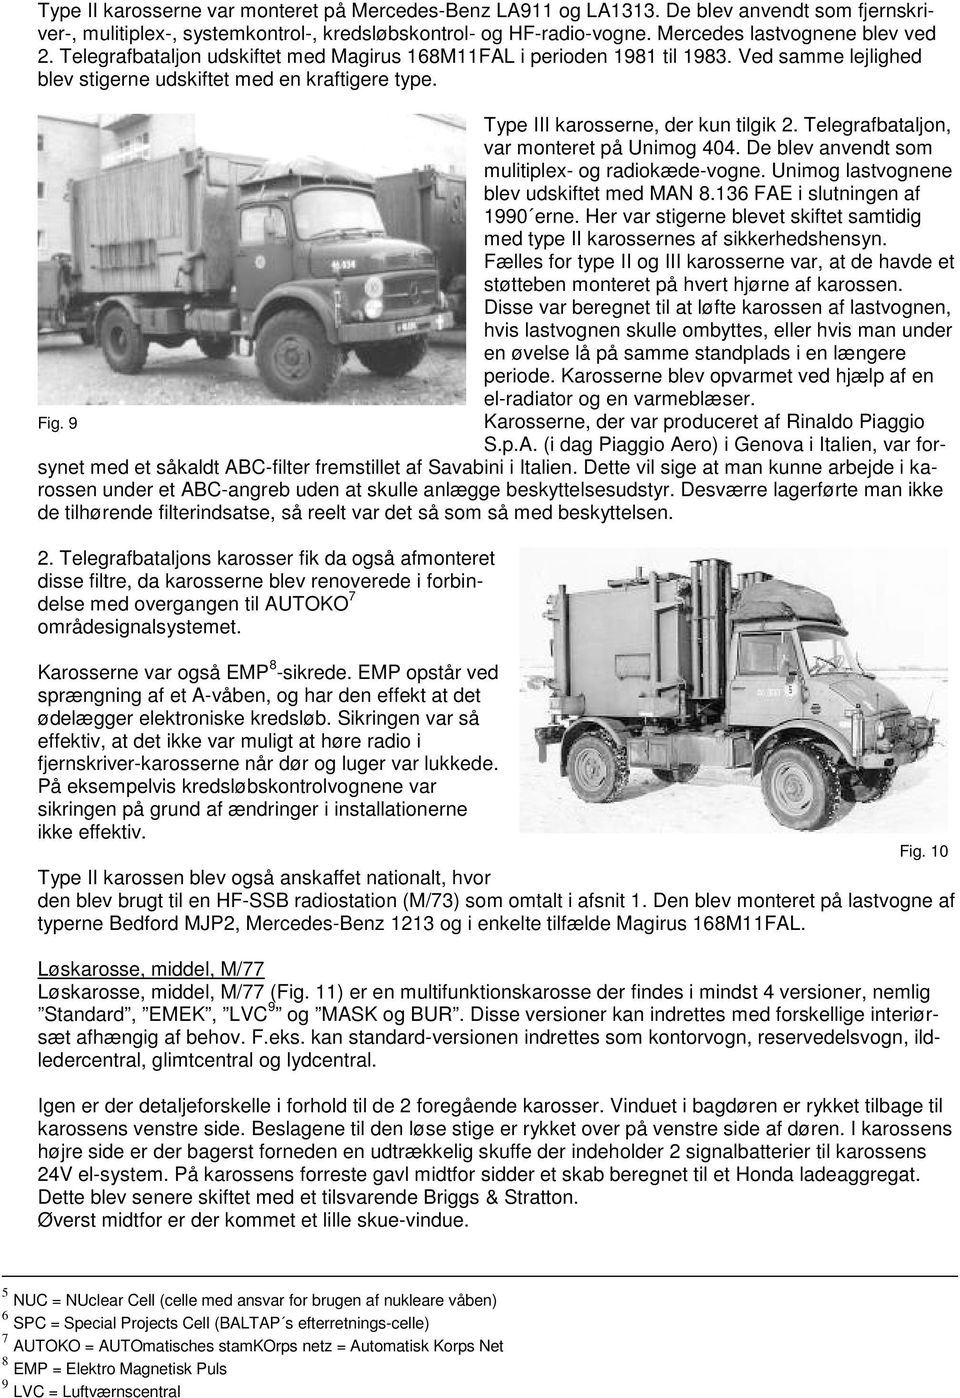 Telegrafbataljon, var monteret på Unimog 404. De blev anvendt som mulitiplex- og radiokæde-vogne. Unimog lastvognene blev udskiftet med MAN 8.136 FAE i slutningen af 1990 erne.